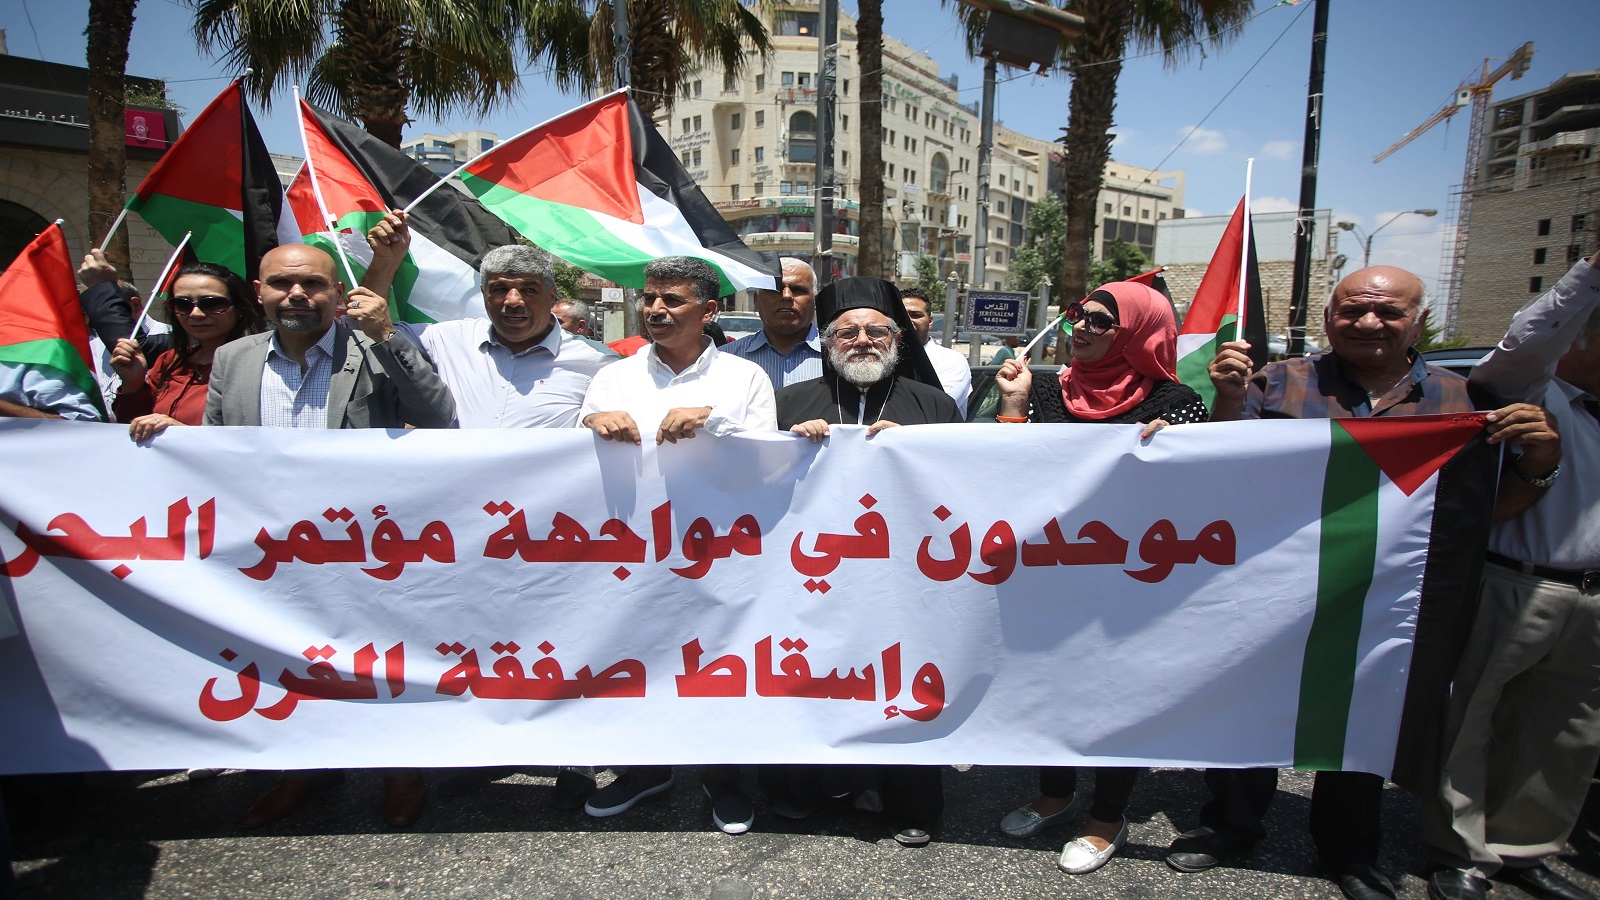 الفلسطينيون يطلقون فعاليات مواجهة "صفقة القرن"